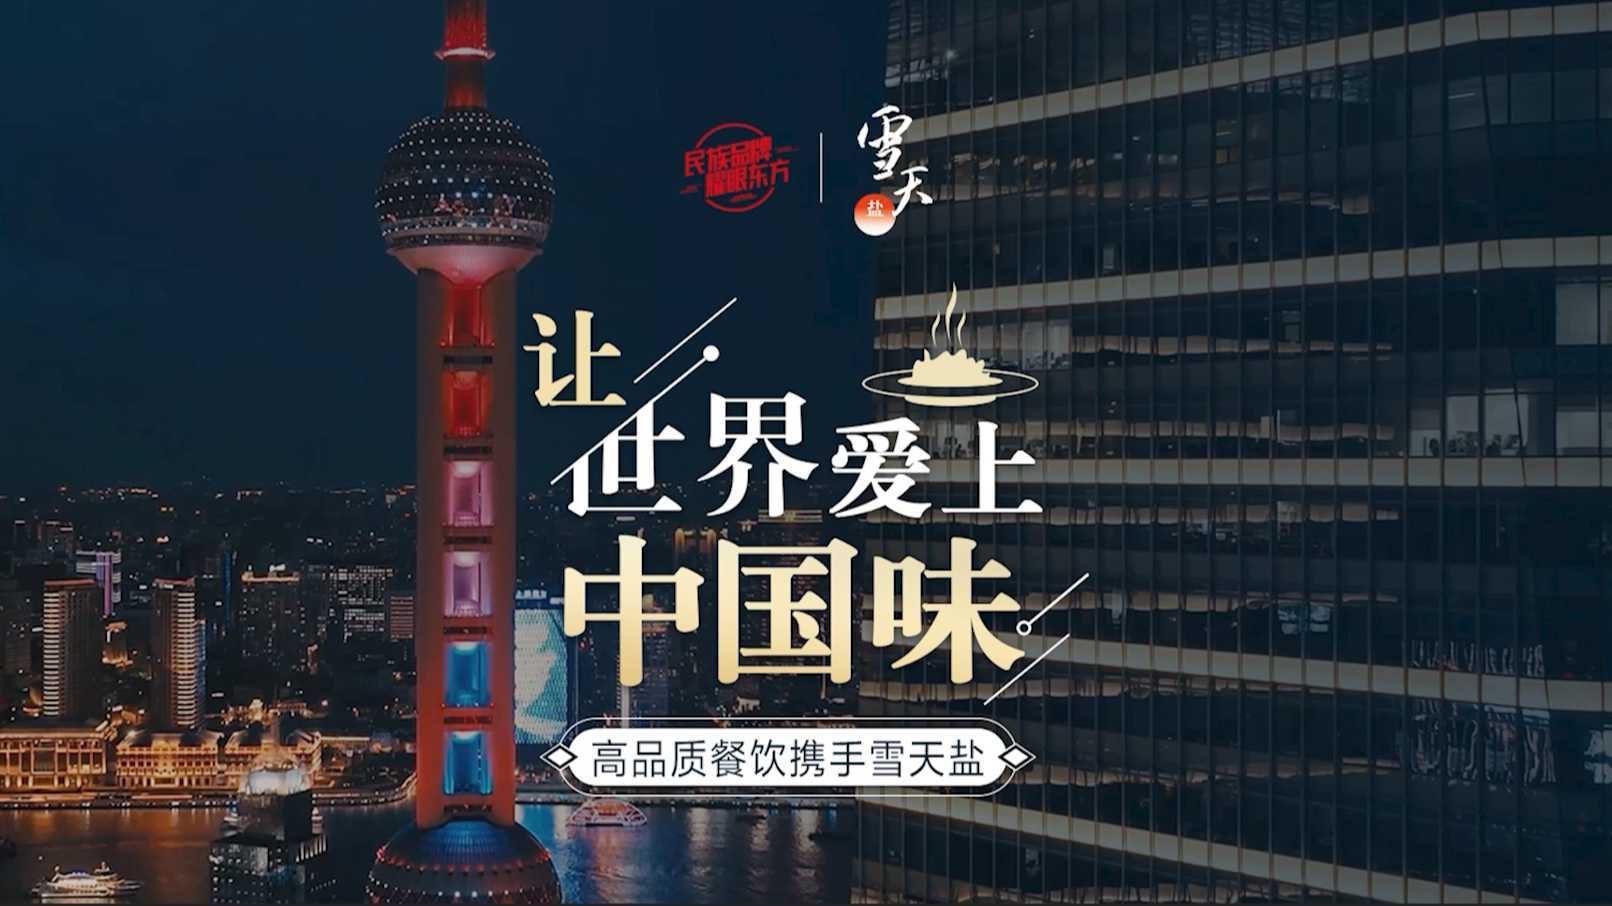 雪天盐#让世界爱上中国味#系列短片—米其林法餐厅广告